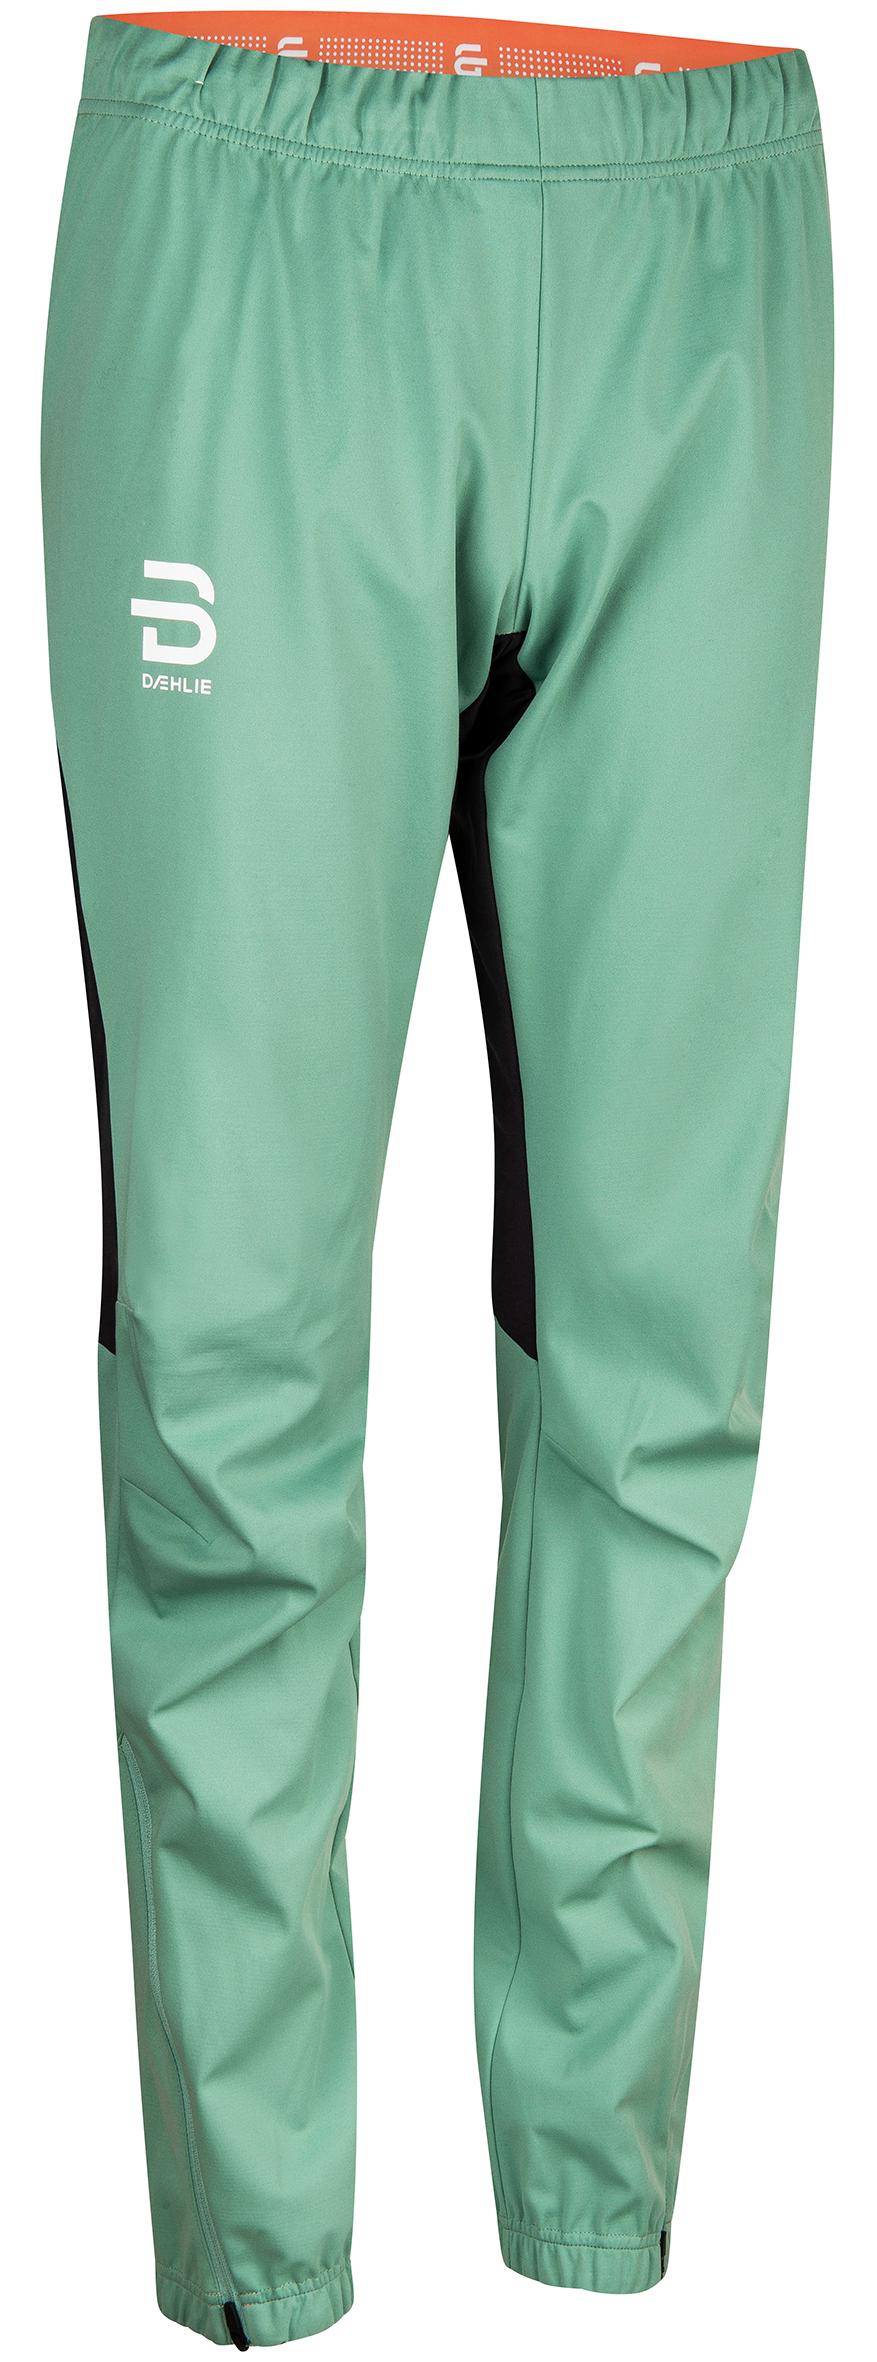 фото Спортивные брюки женские bjorn daehlie 332958 зеленые xs